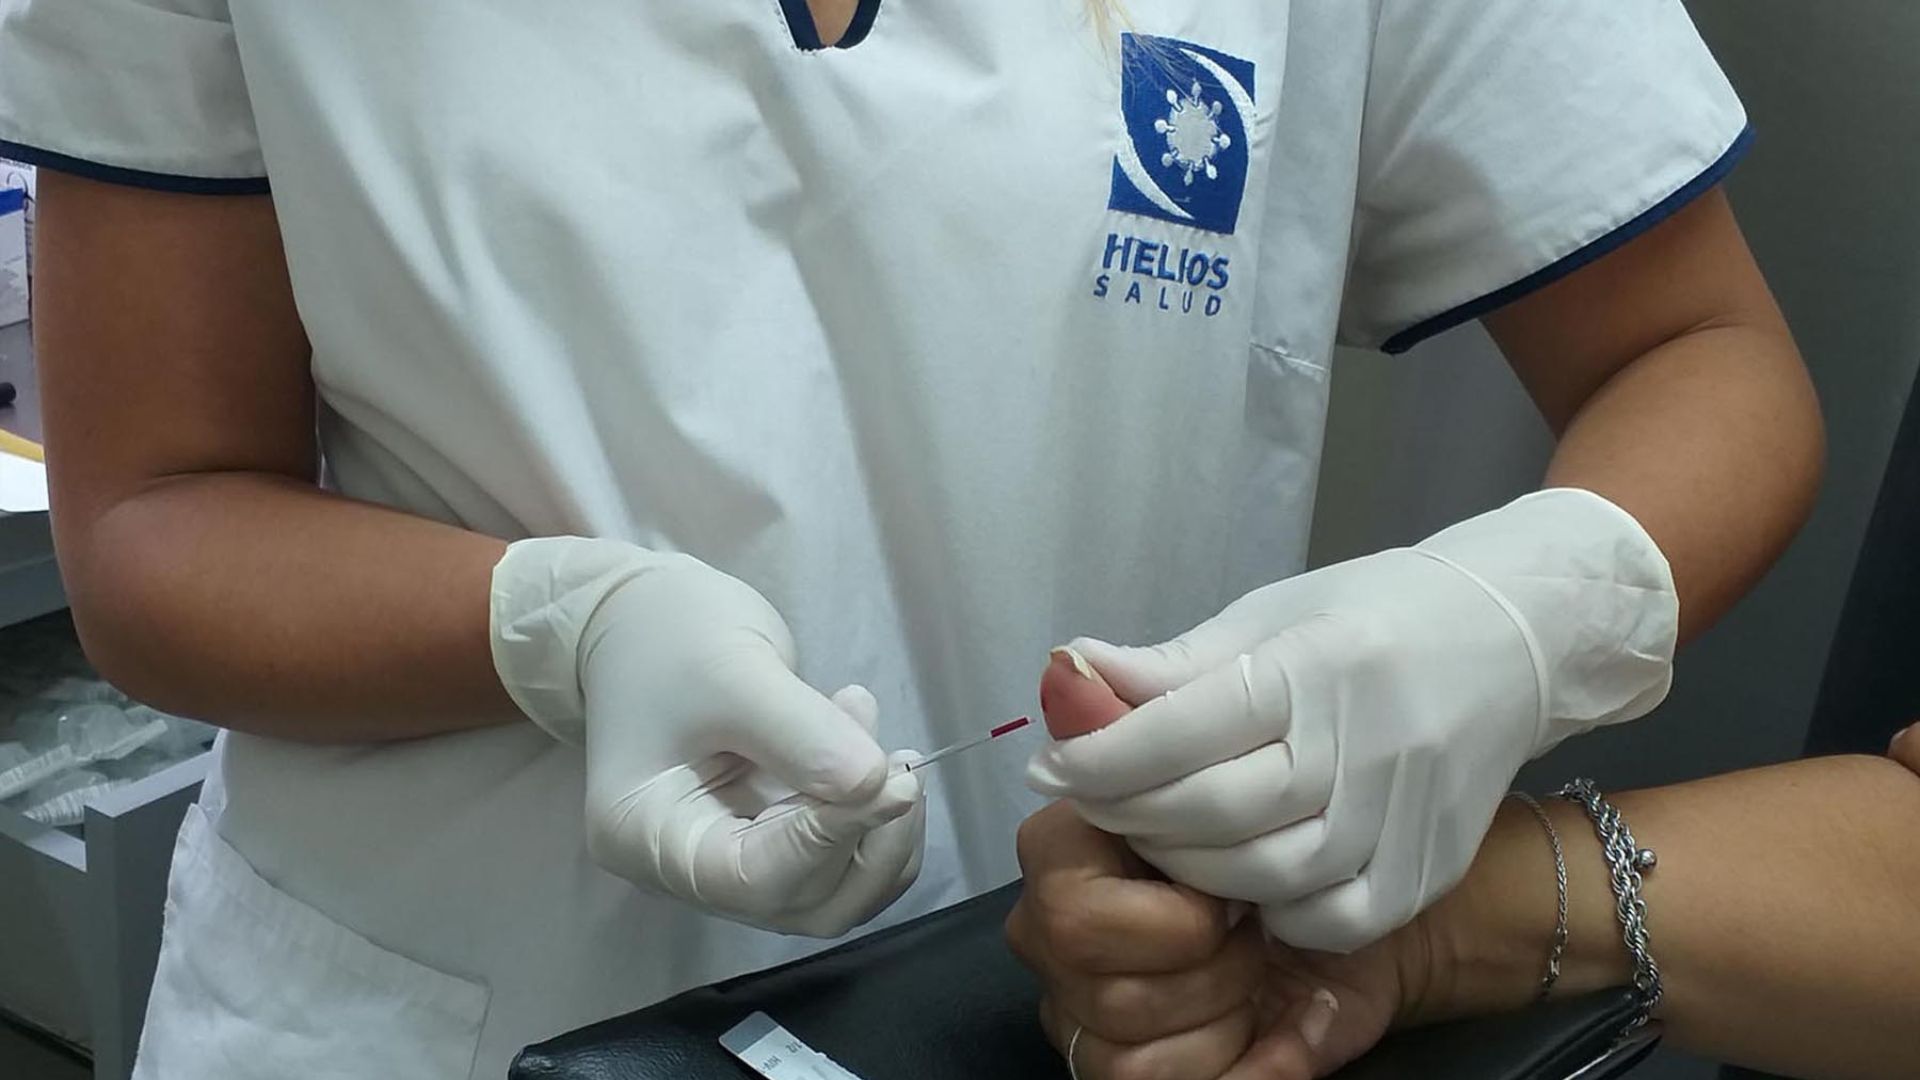 Test rápido de VIH (Crédito: Prensa Helios Salud)